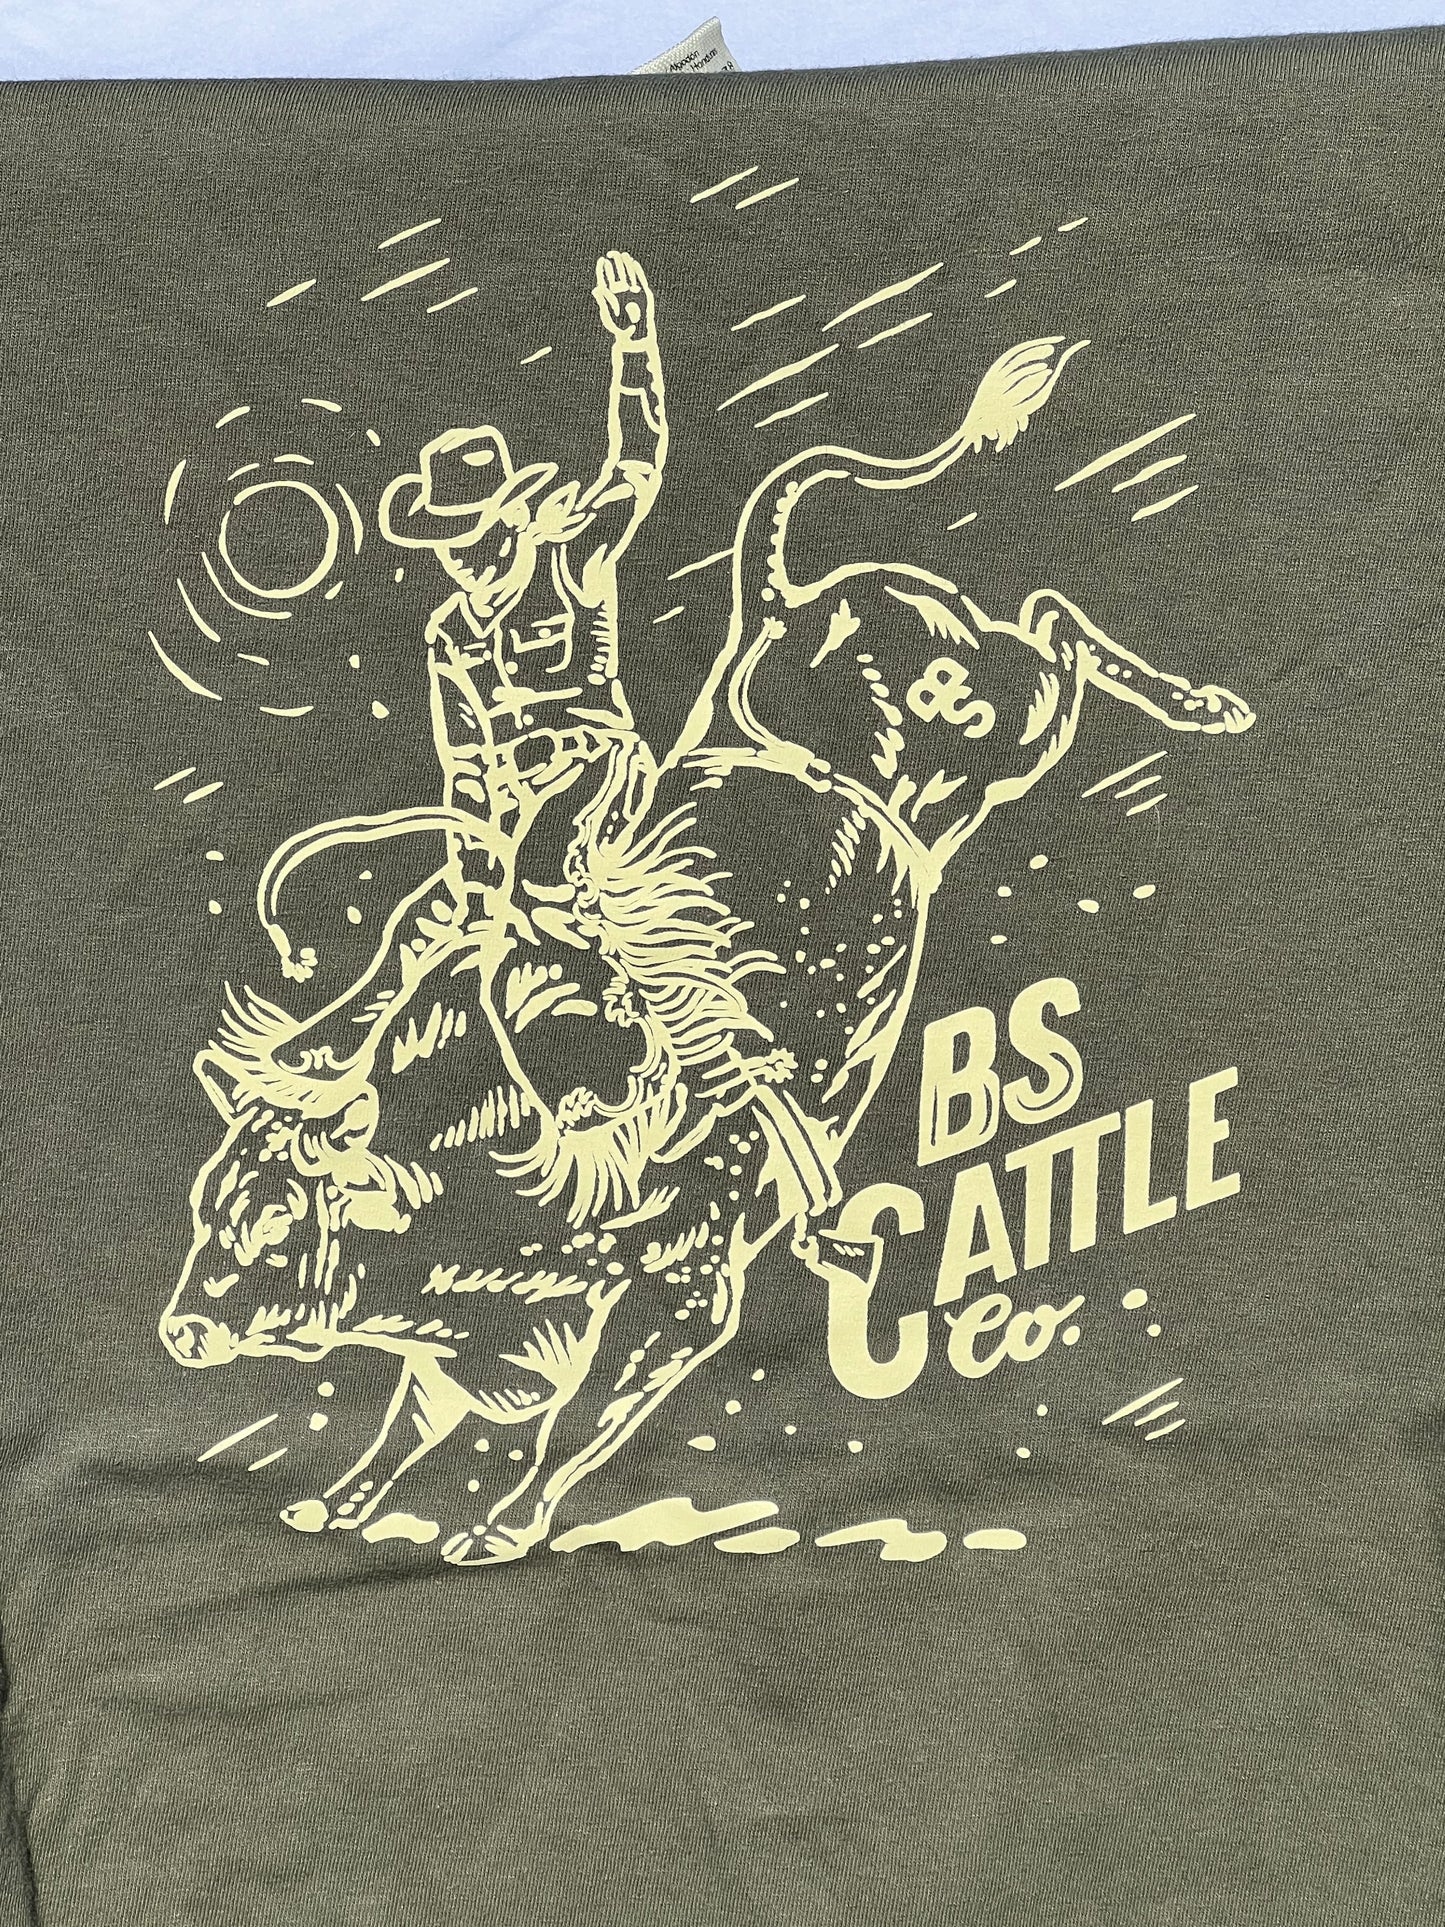 BS Cattle Co T-Shirt